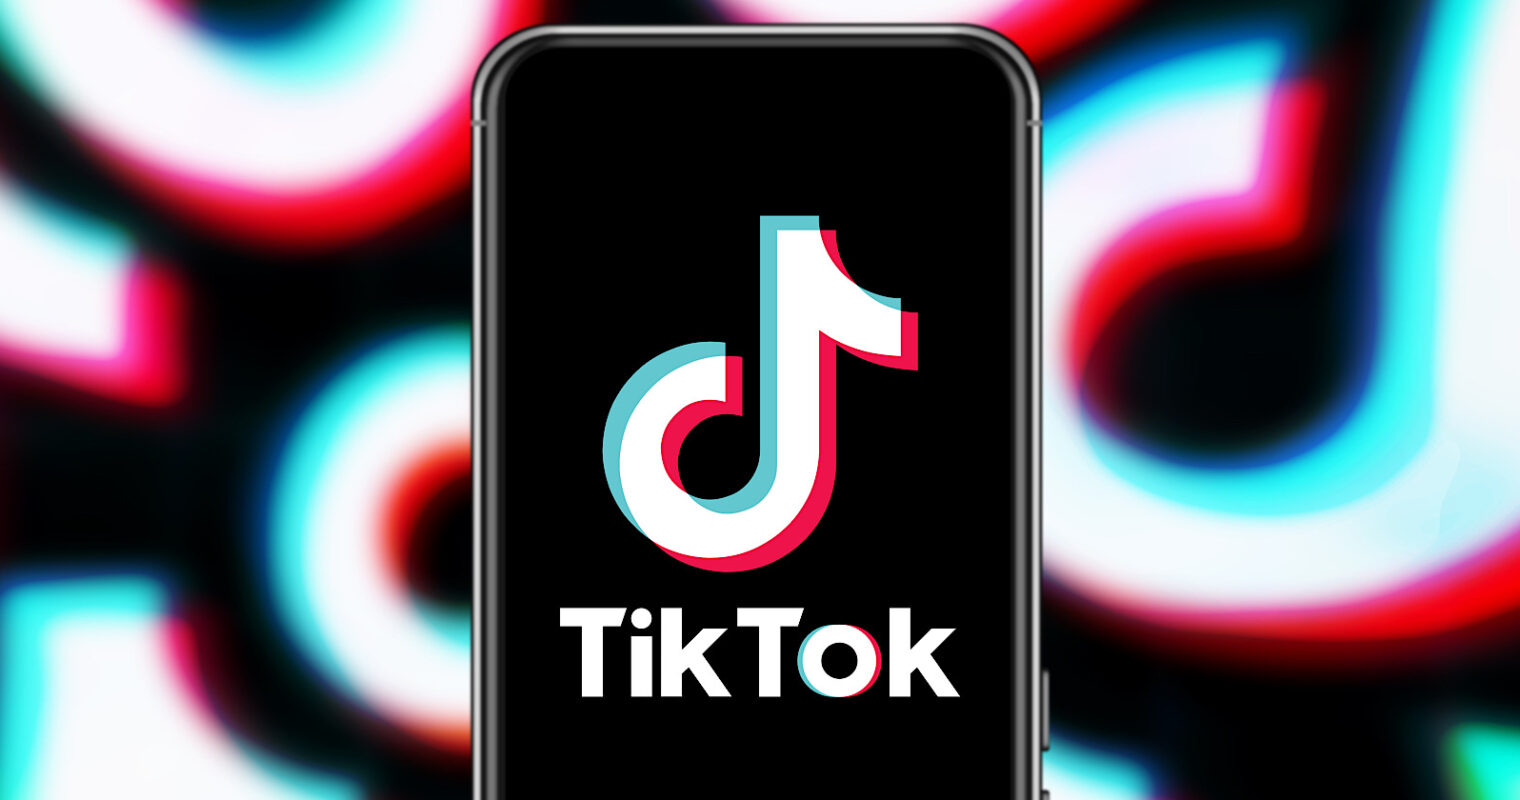 Kết nối văn minh, sáng tạo an toàn từ giải pháp bảo vệ người dùng của TikTok